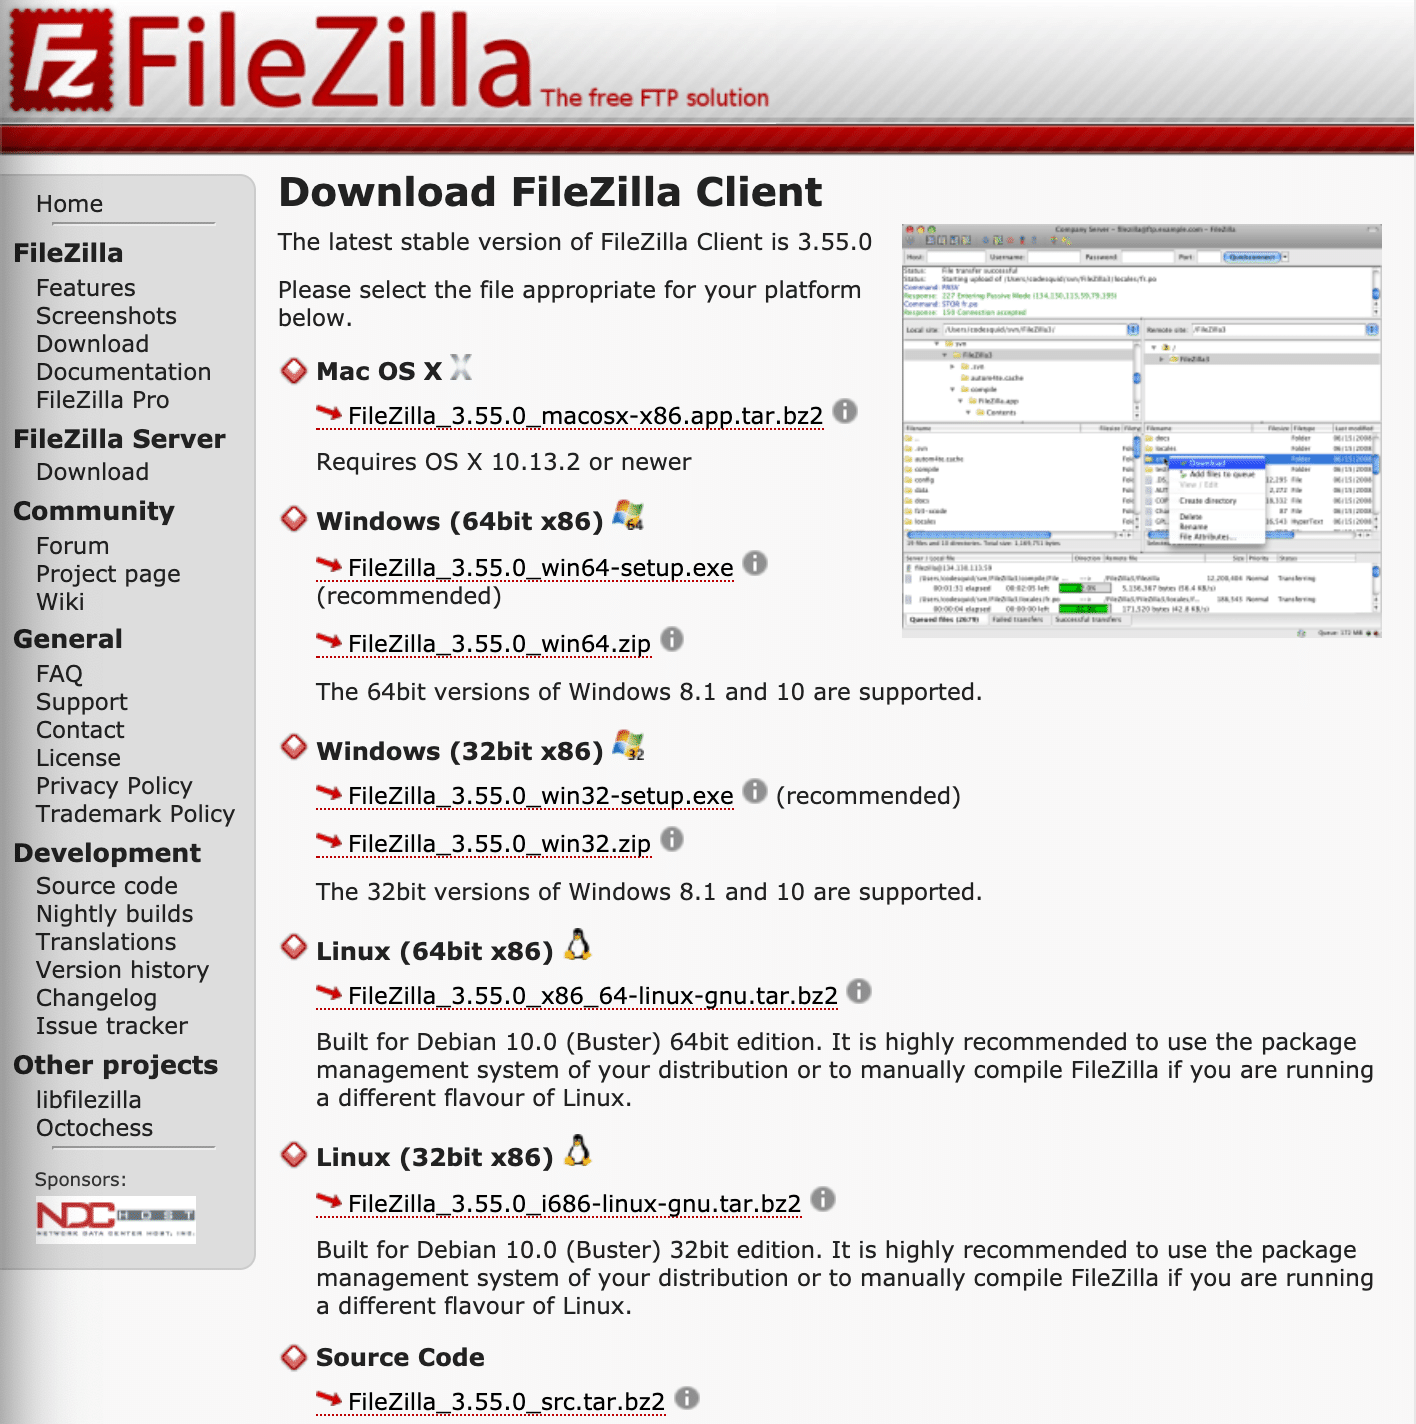 Uma página com todas as versões do FileZilla e seus links para Download